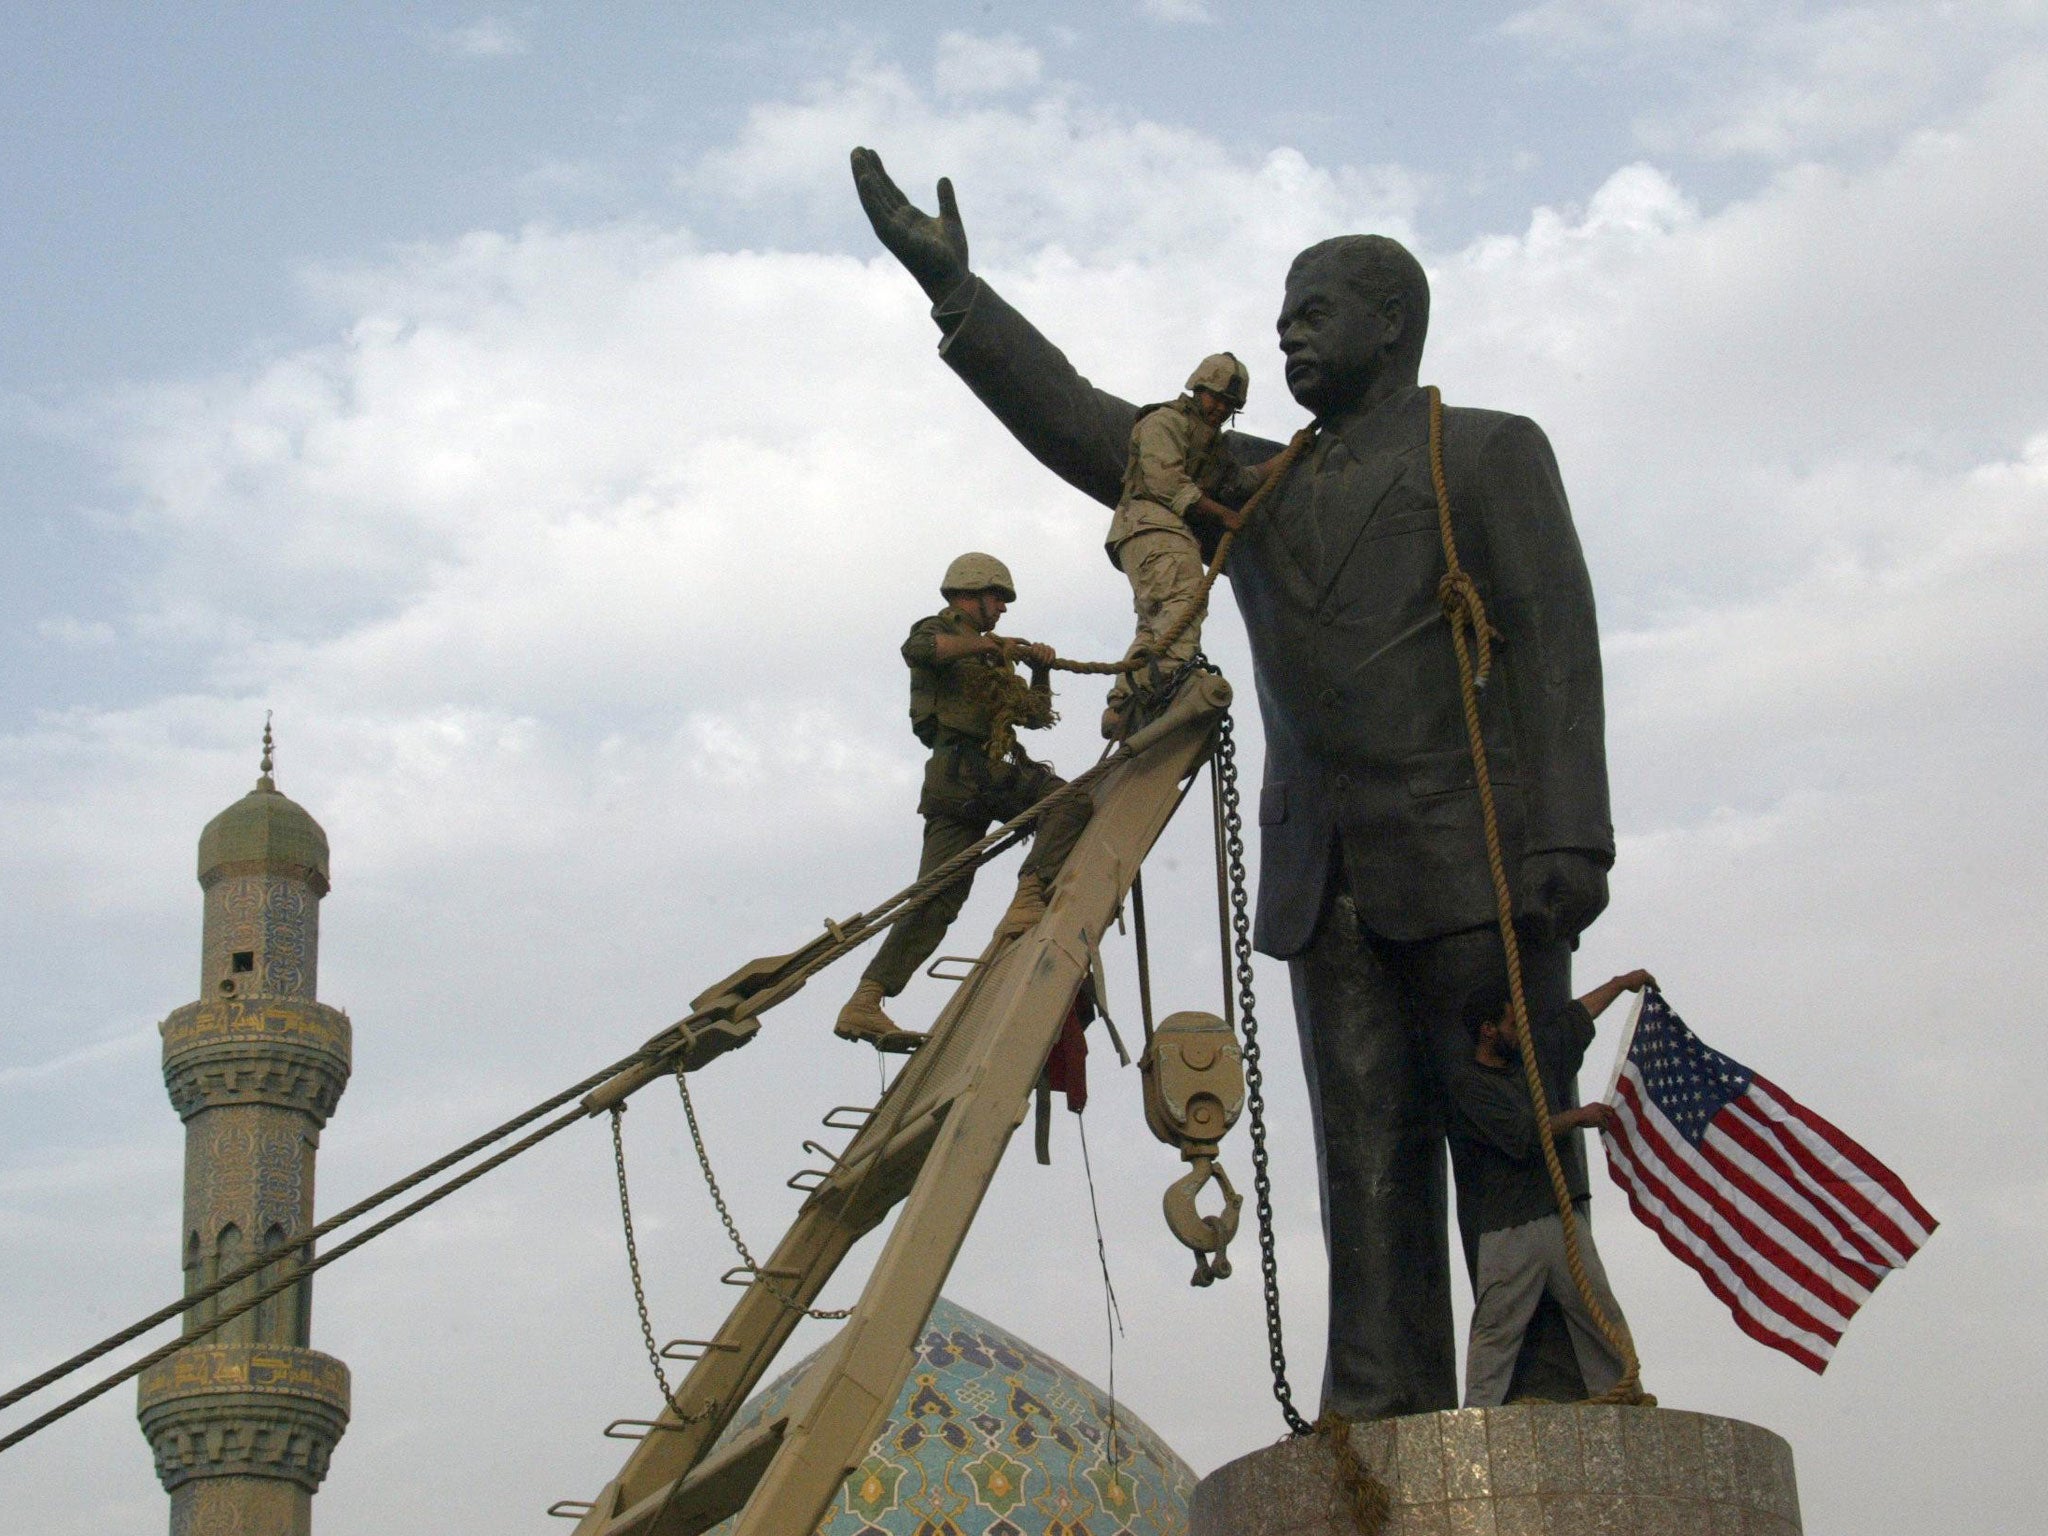 “Eu me arrependi de derrubar a estátua de Saddam Hussein em Bagdá”